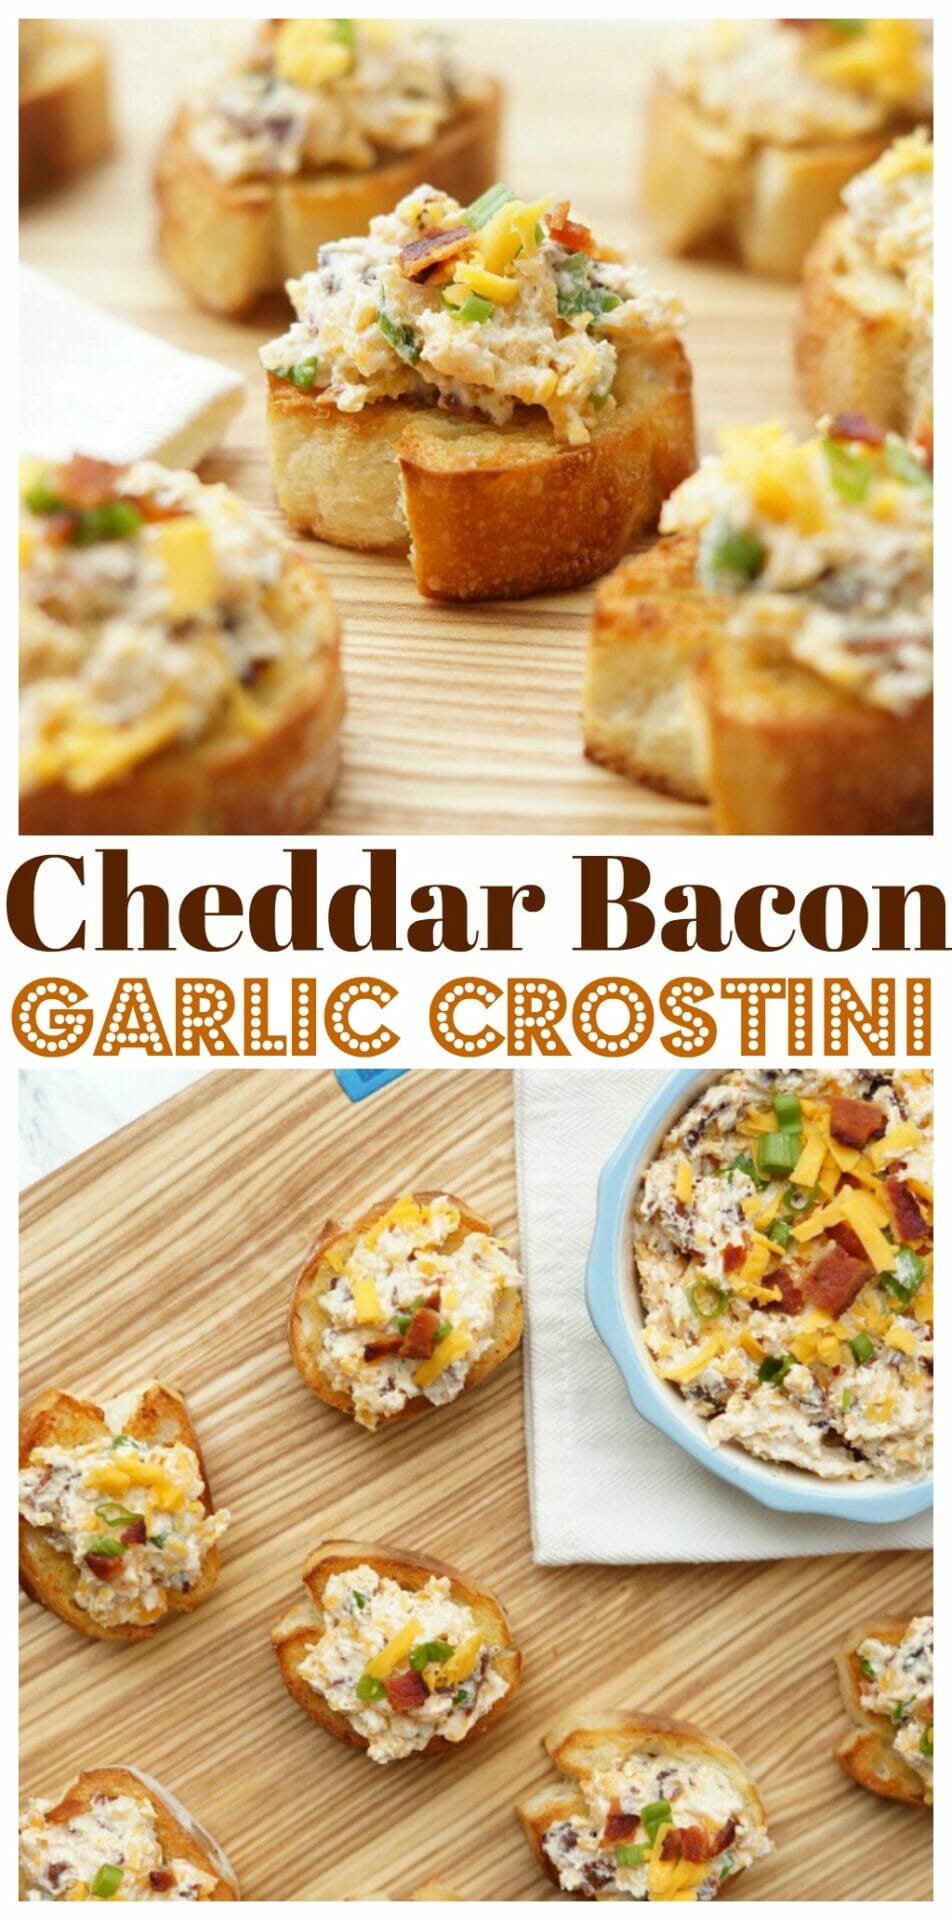 Cheddar Bacon Garlic Crostini